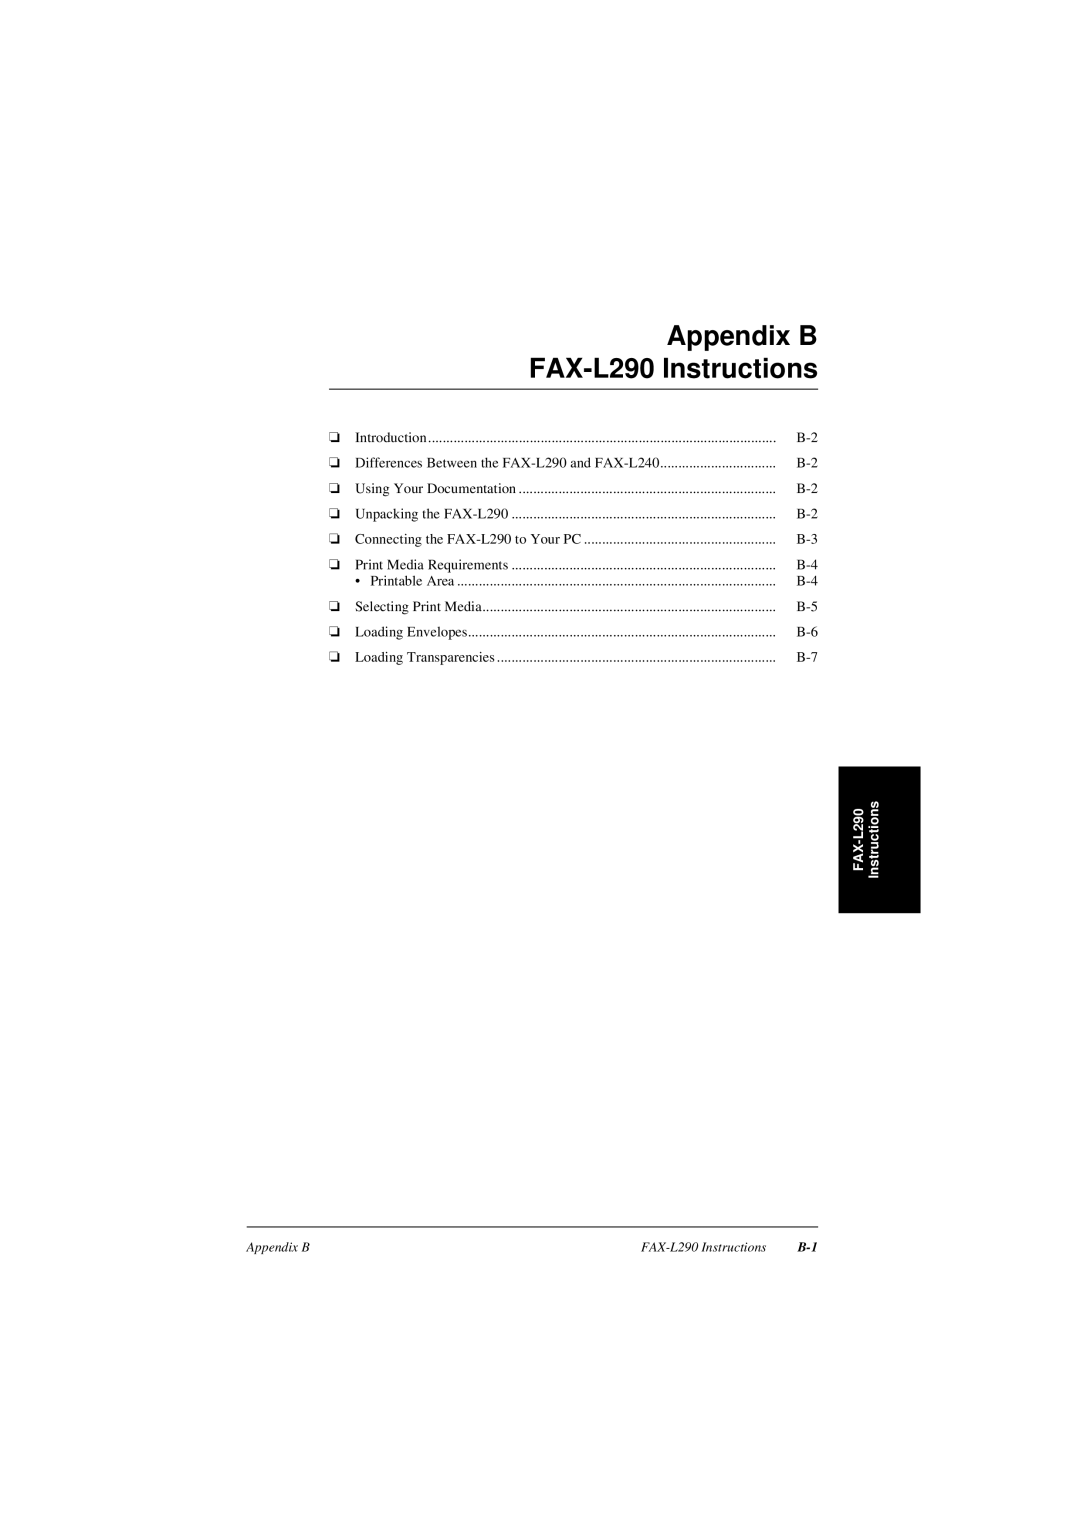 Canon L240 manual Appendix B FAX-L290 Instructions, Instructions FAX-L290 